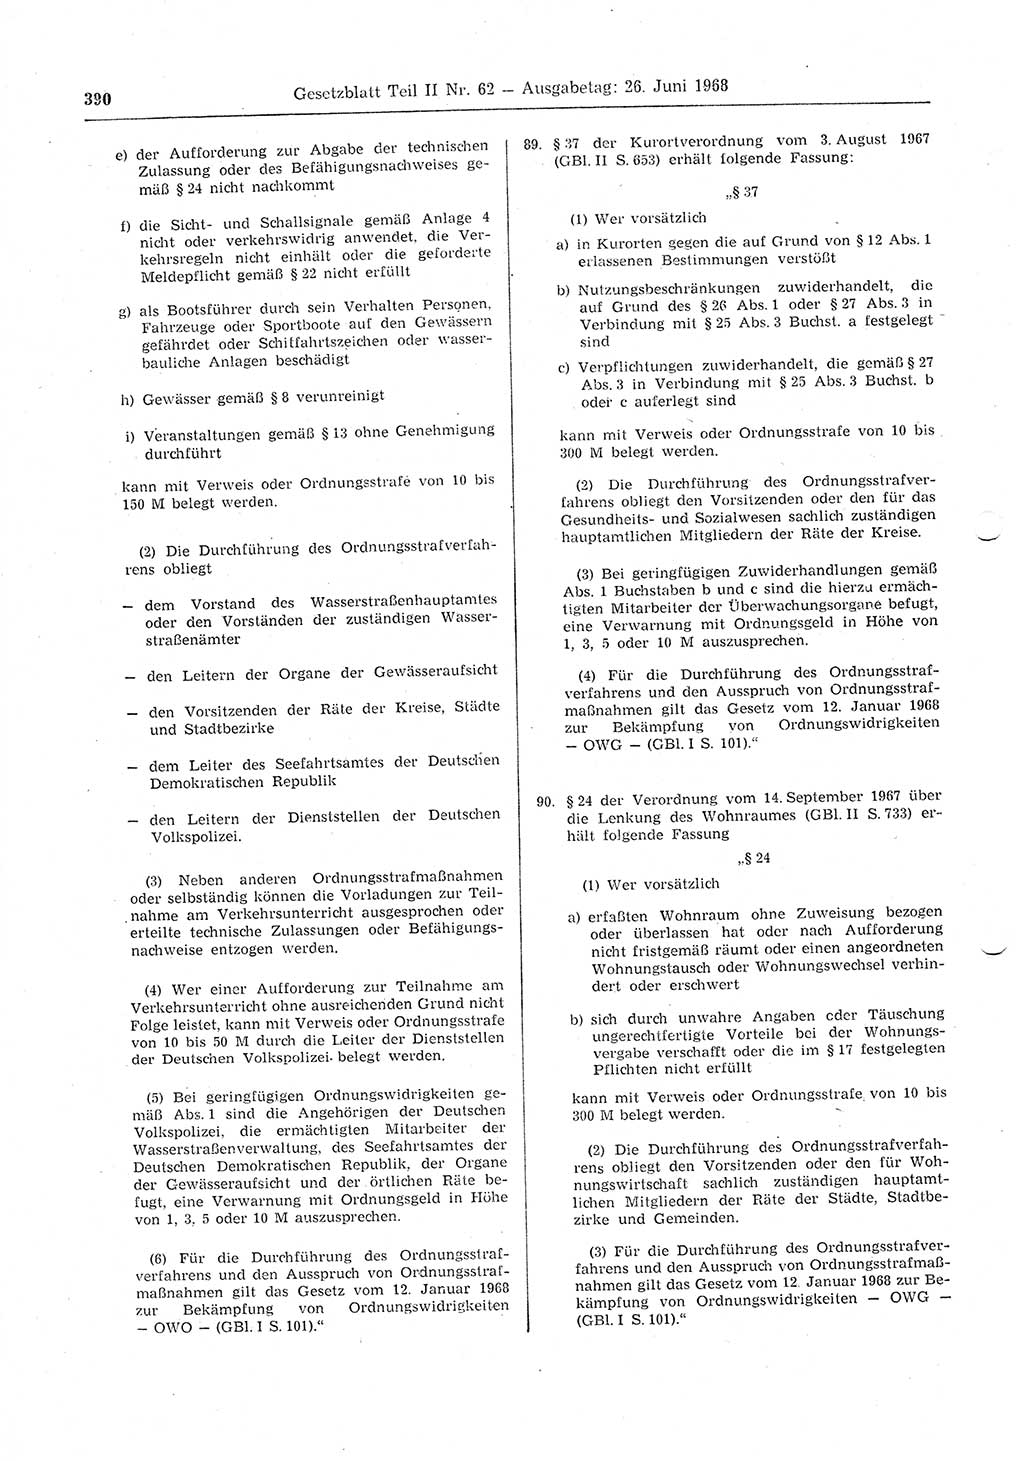 Gesetzblatt (GBl.) der Deutschen Demokratischen Republik (DDR) Teil ⅠⅠ 1968, Seite 390 (GBl. DDR ⅠⅠ 1968, S. 390)